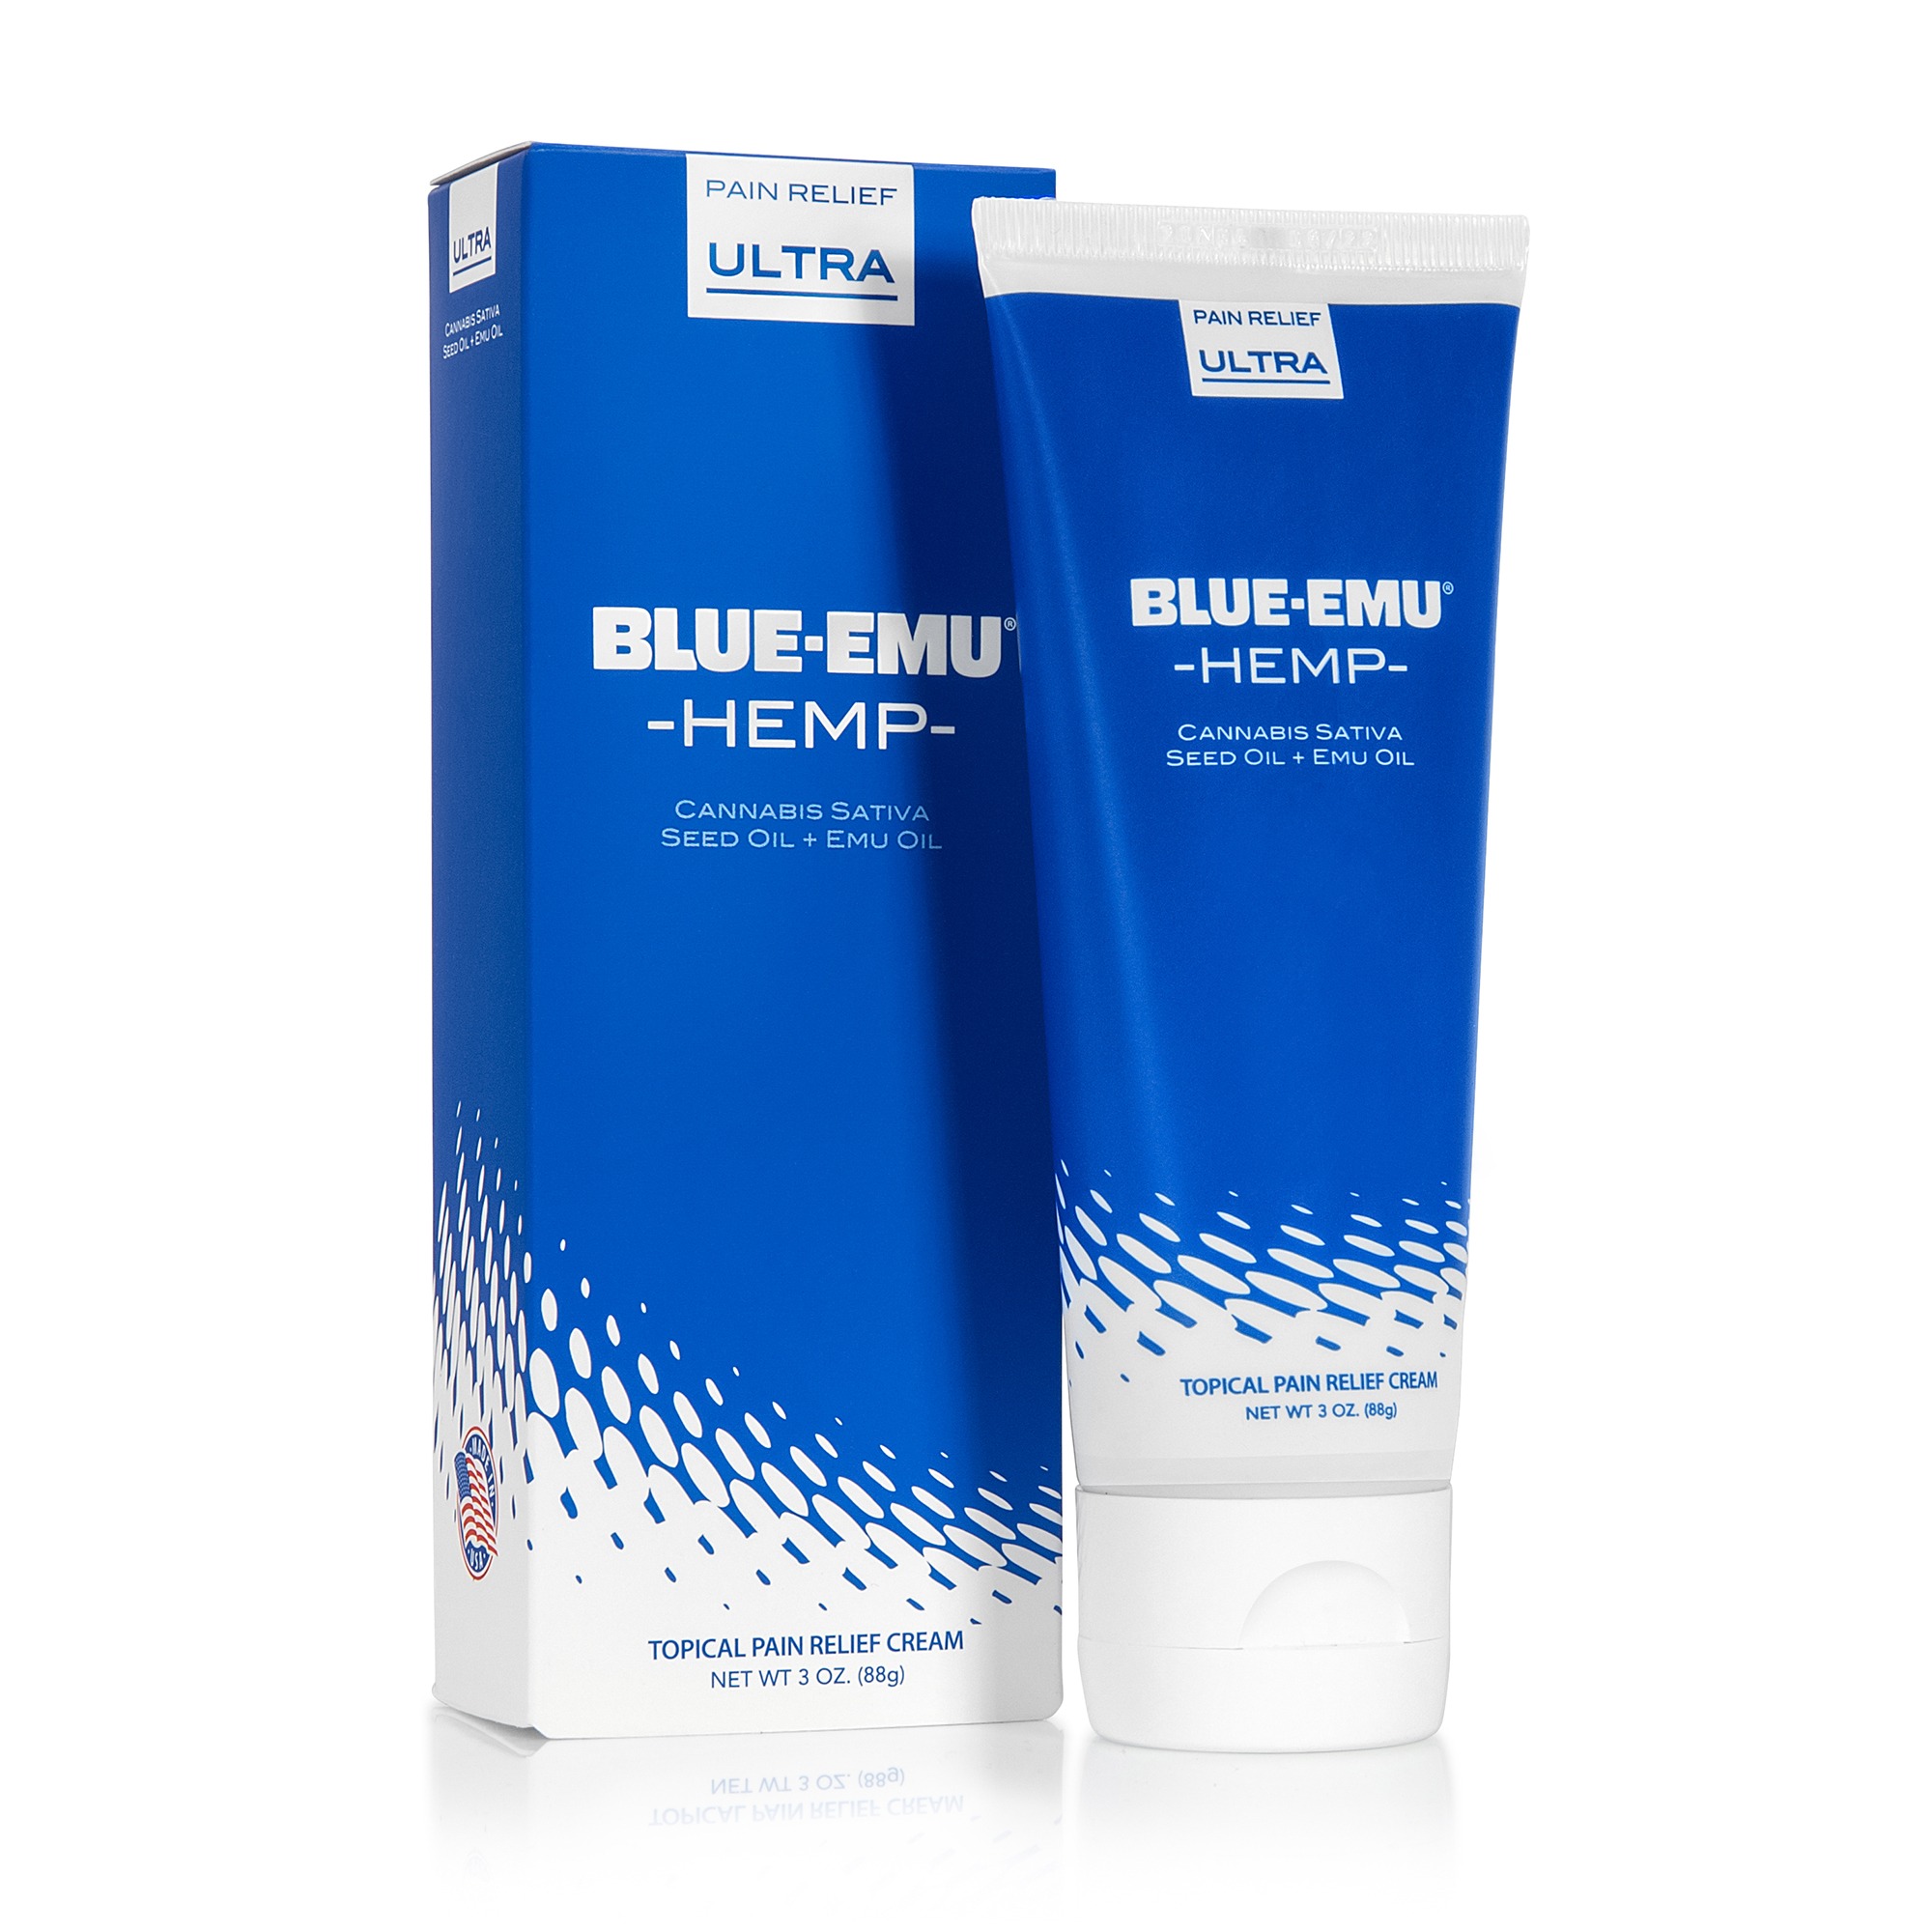 Blue-Emu Maximum Arthritis Pain Relief Cream, 3 OZ Ingredients - CVS  Pharmacy